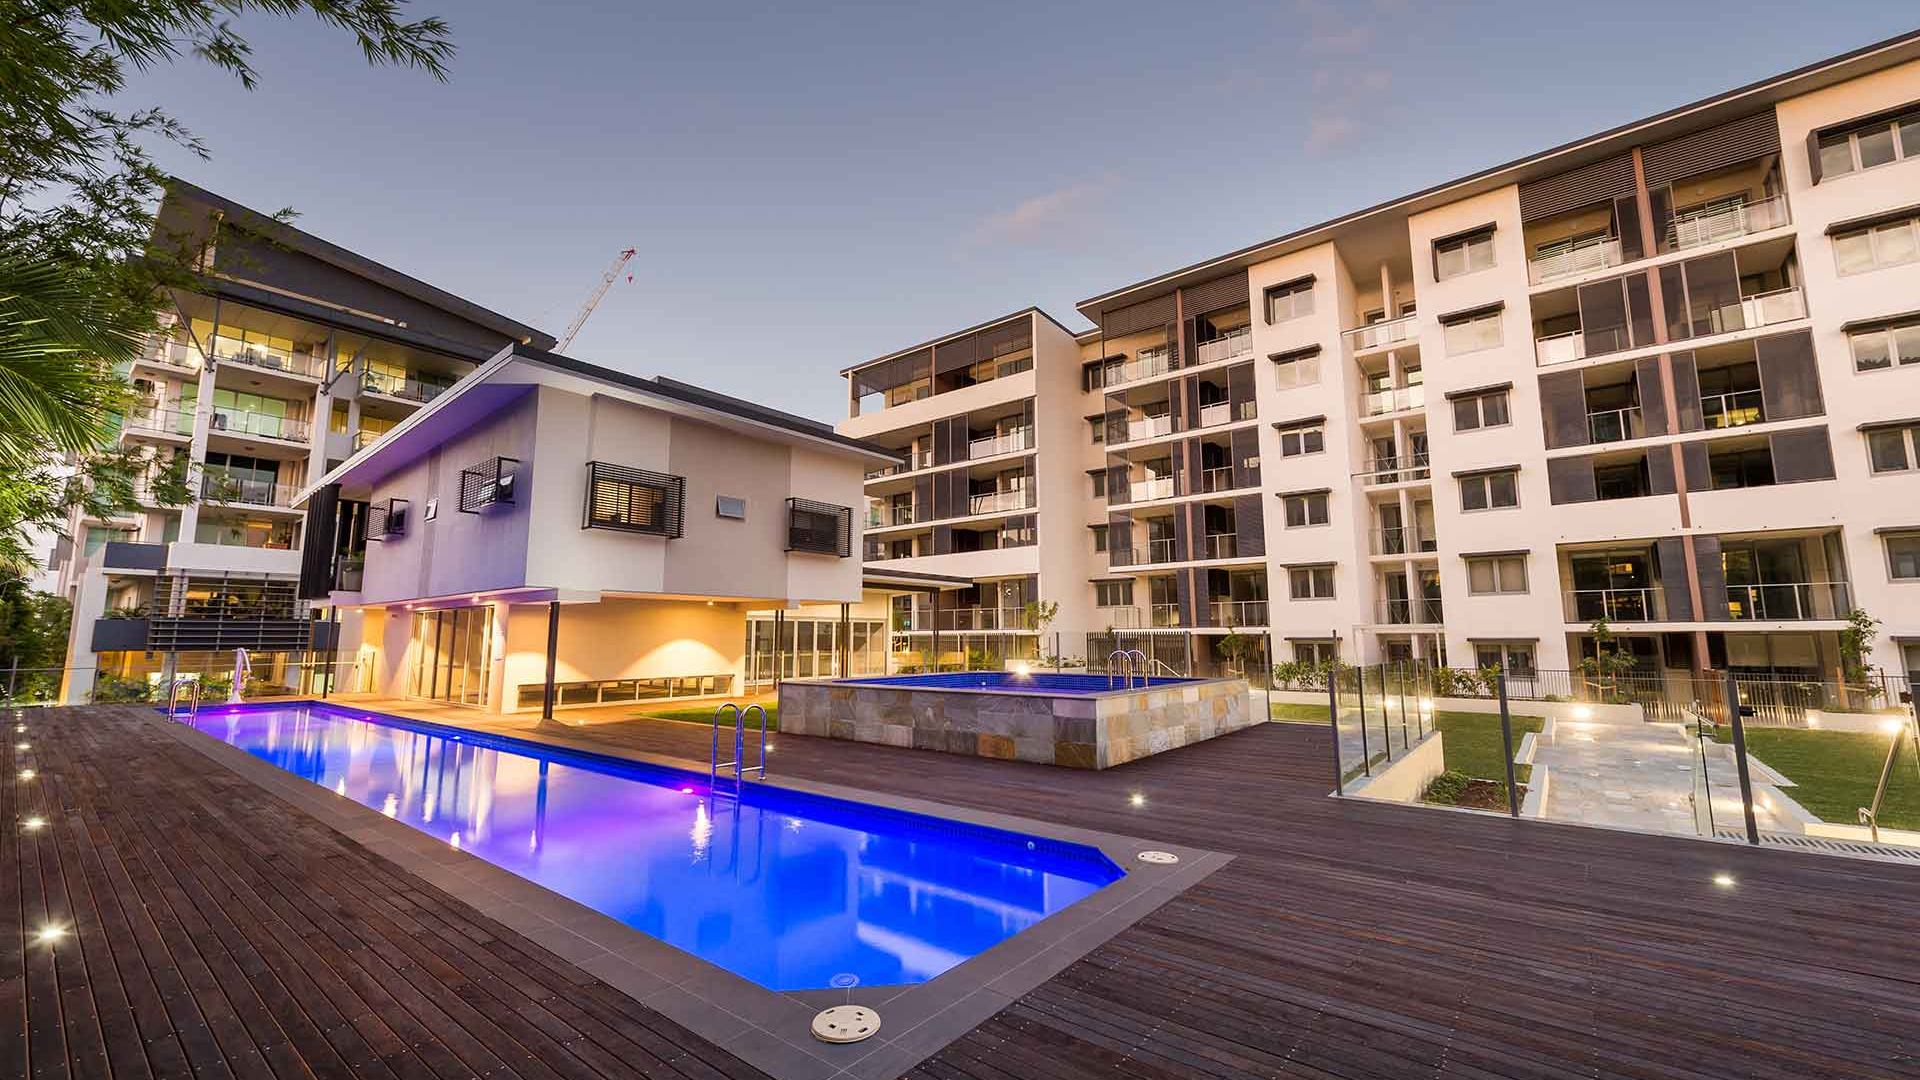 Merbau Decking South Brisbane- hotel pool deck